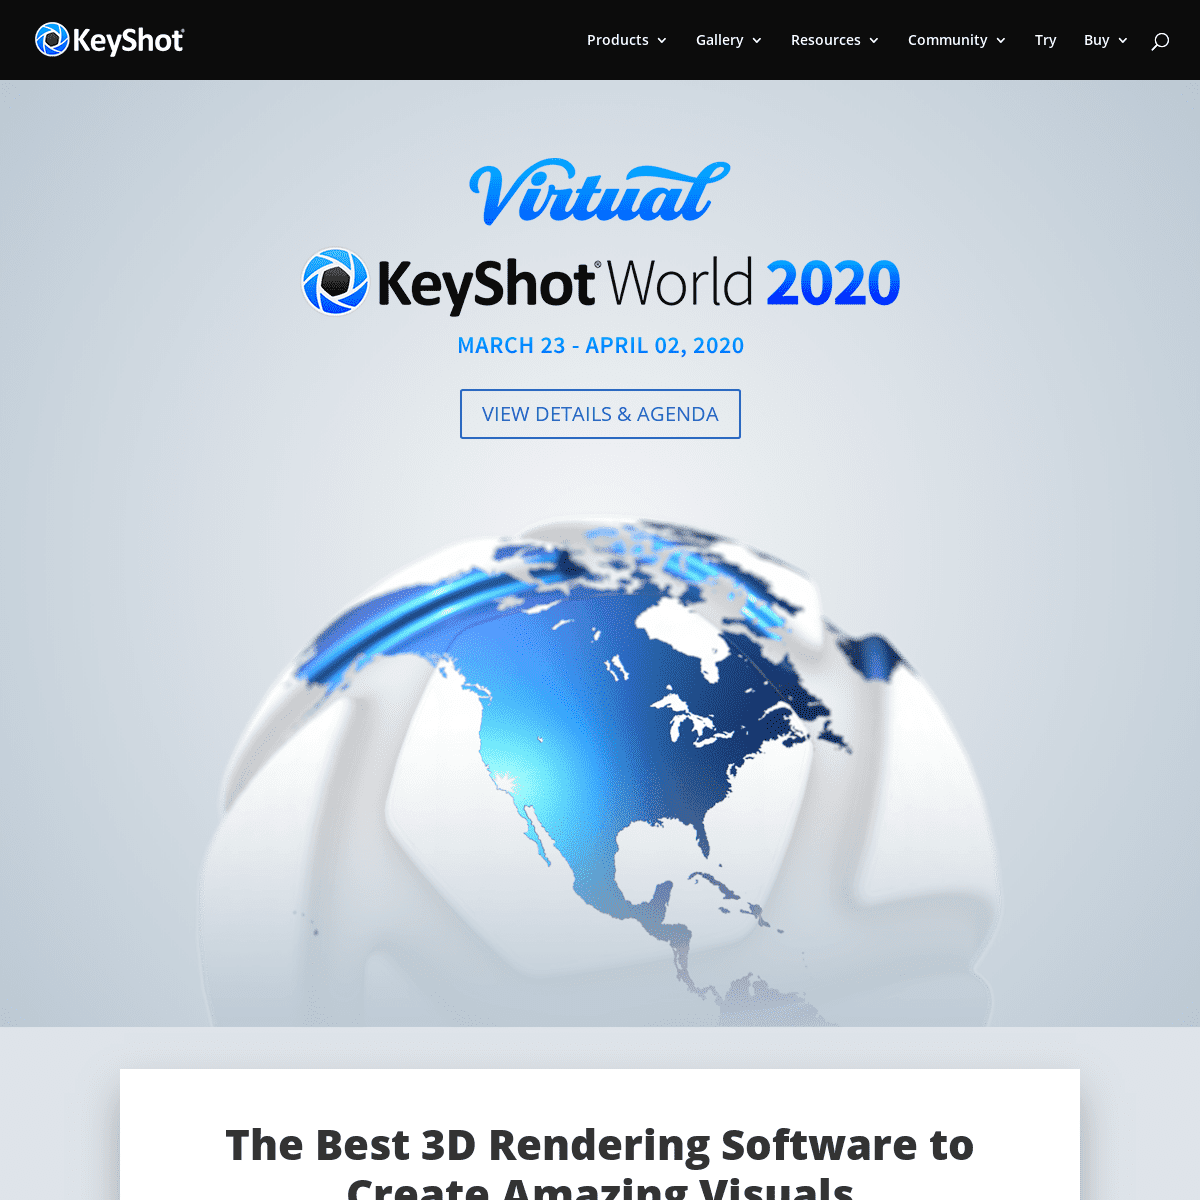 A complete backup of keyshot.com